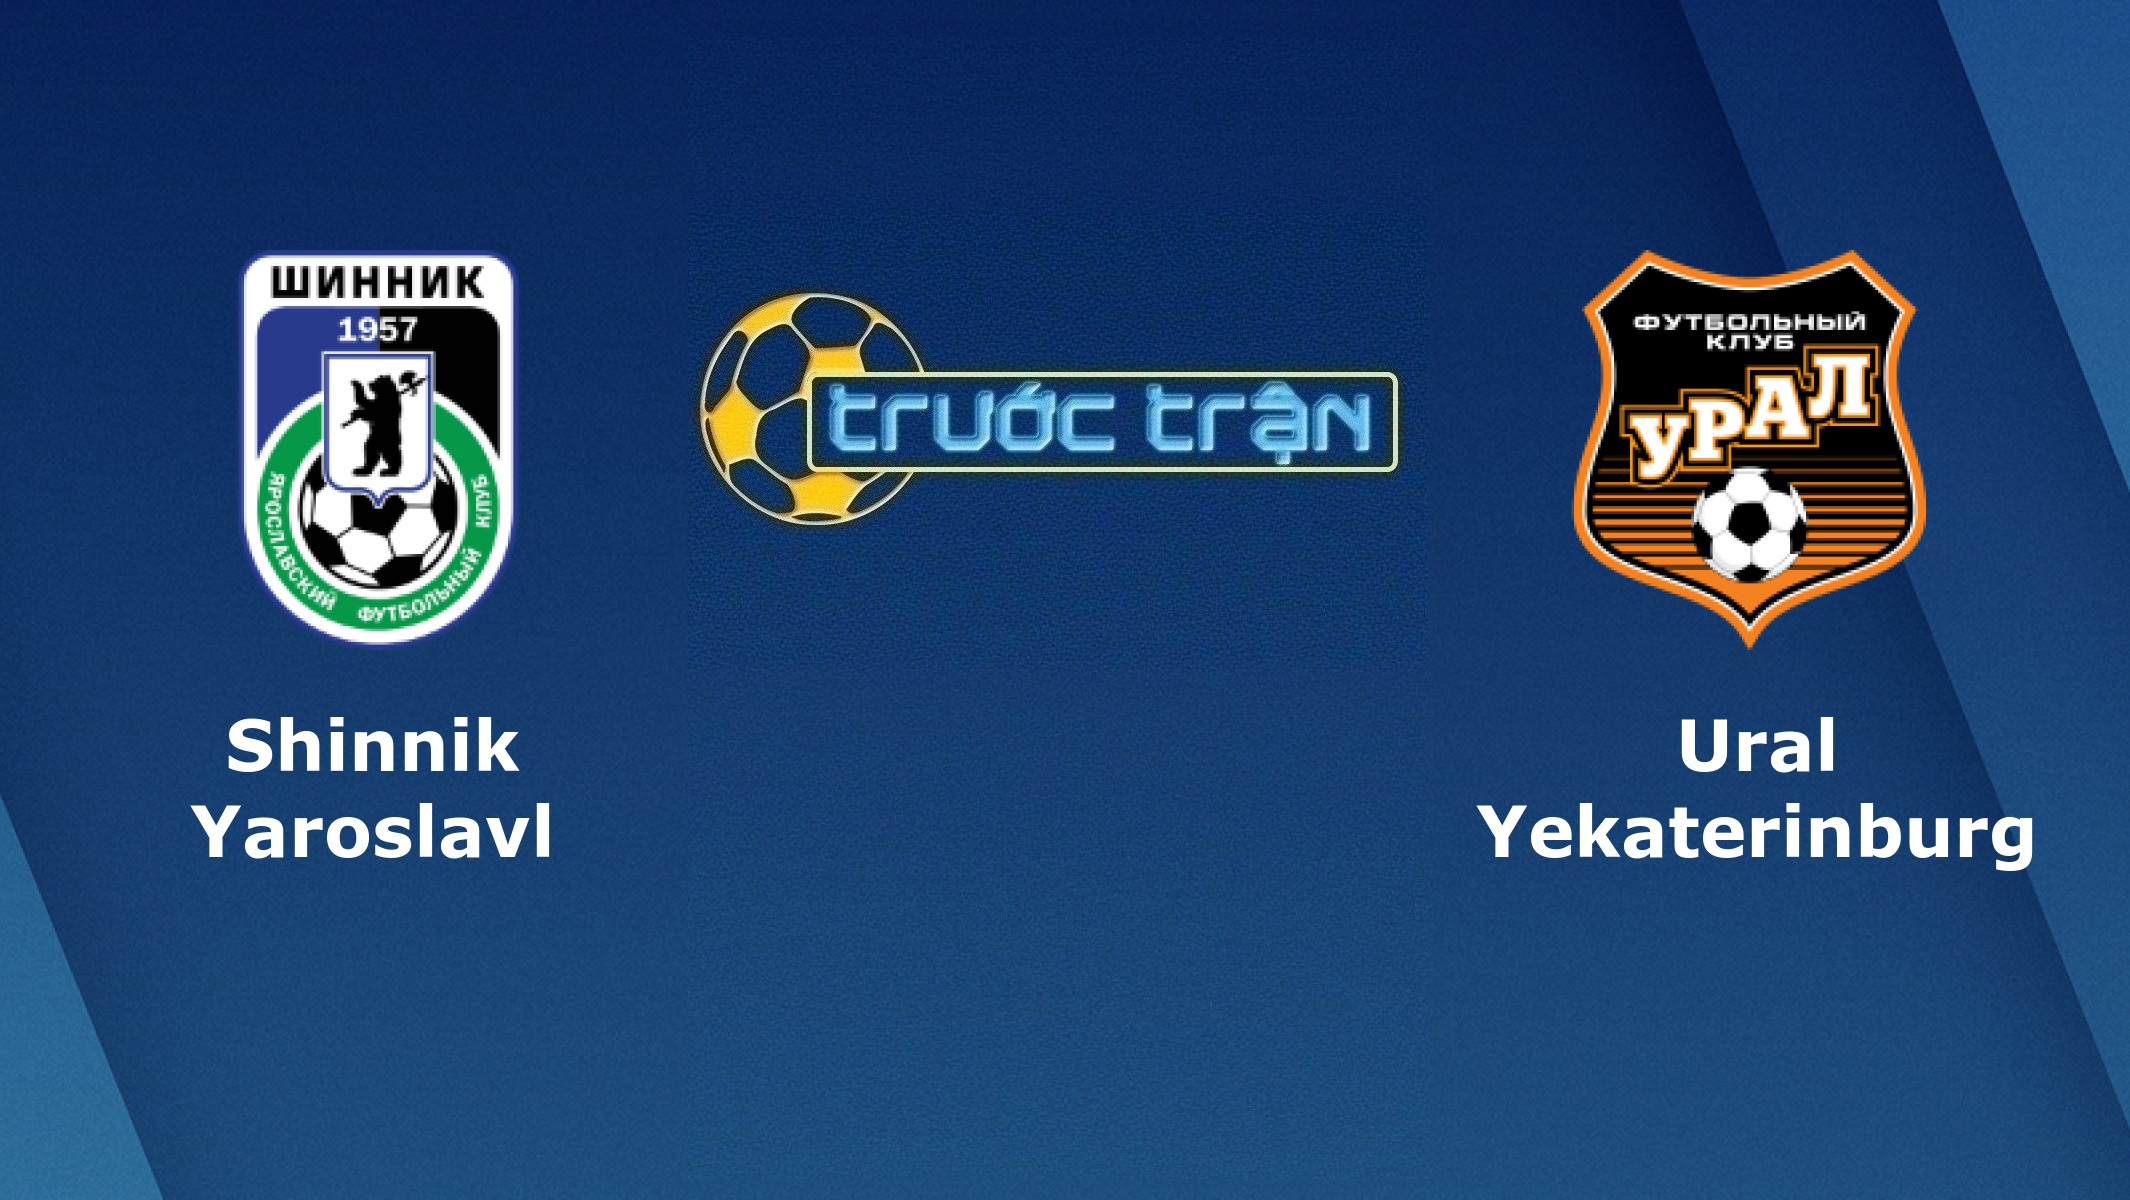 Shinnik Yaroslavl vs FC Ural – Tip kèo bóng đá hôm nay – 04/03